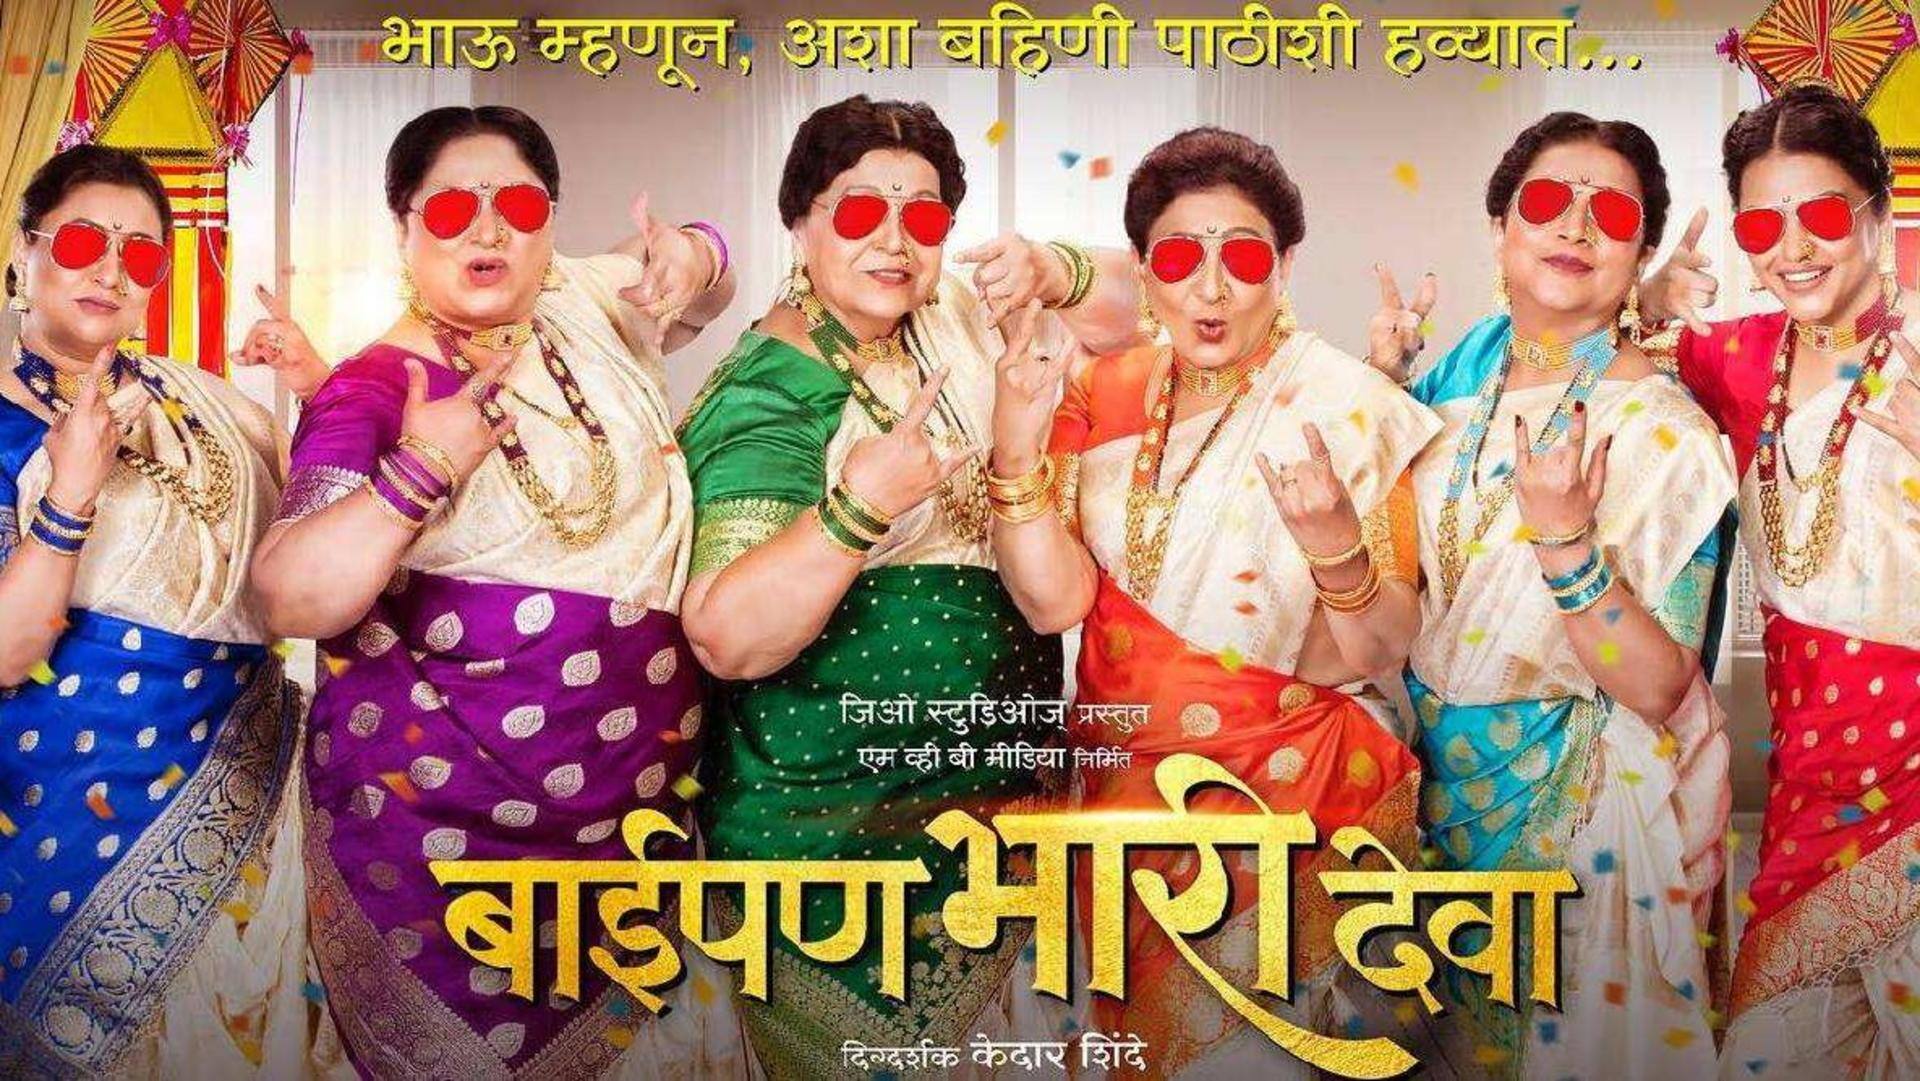 'Baipan Bhaari Deva' continues its box office rampage